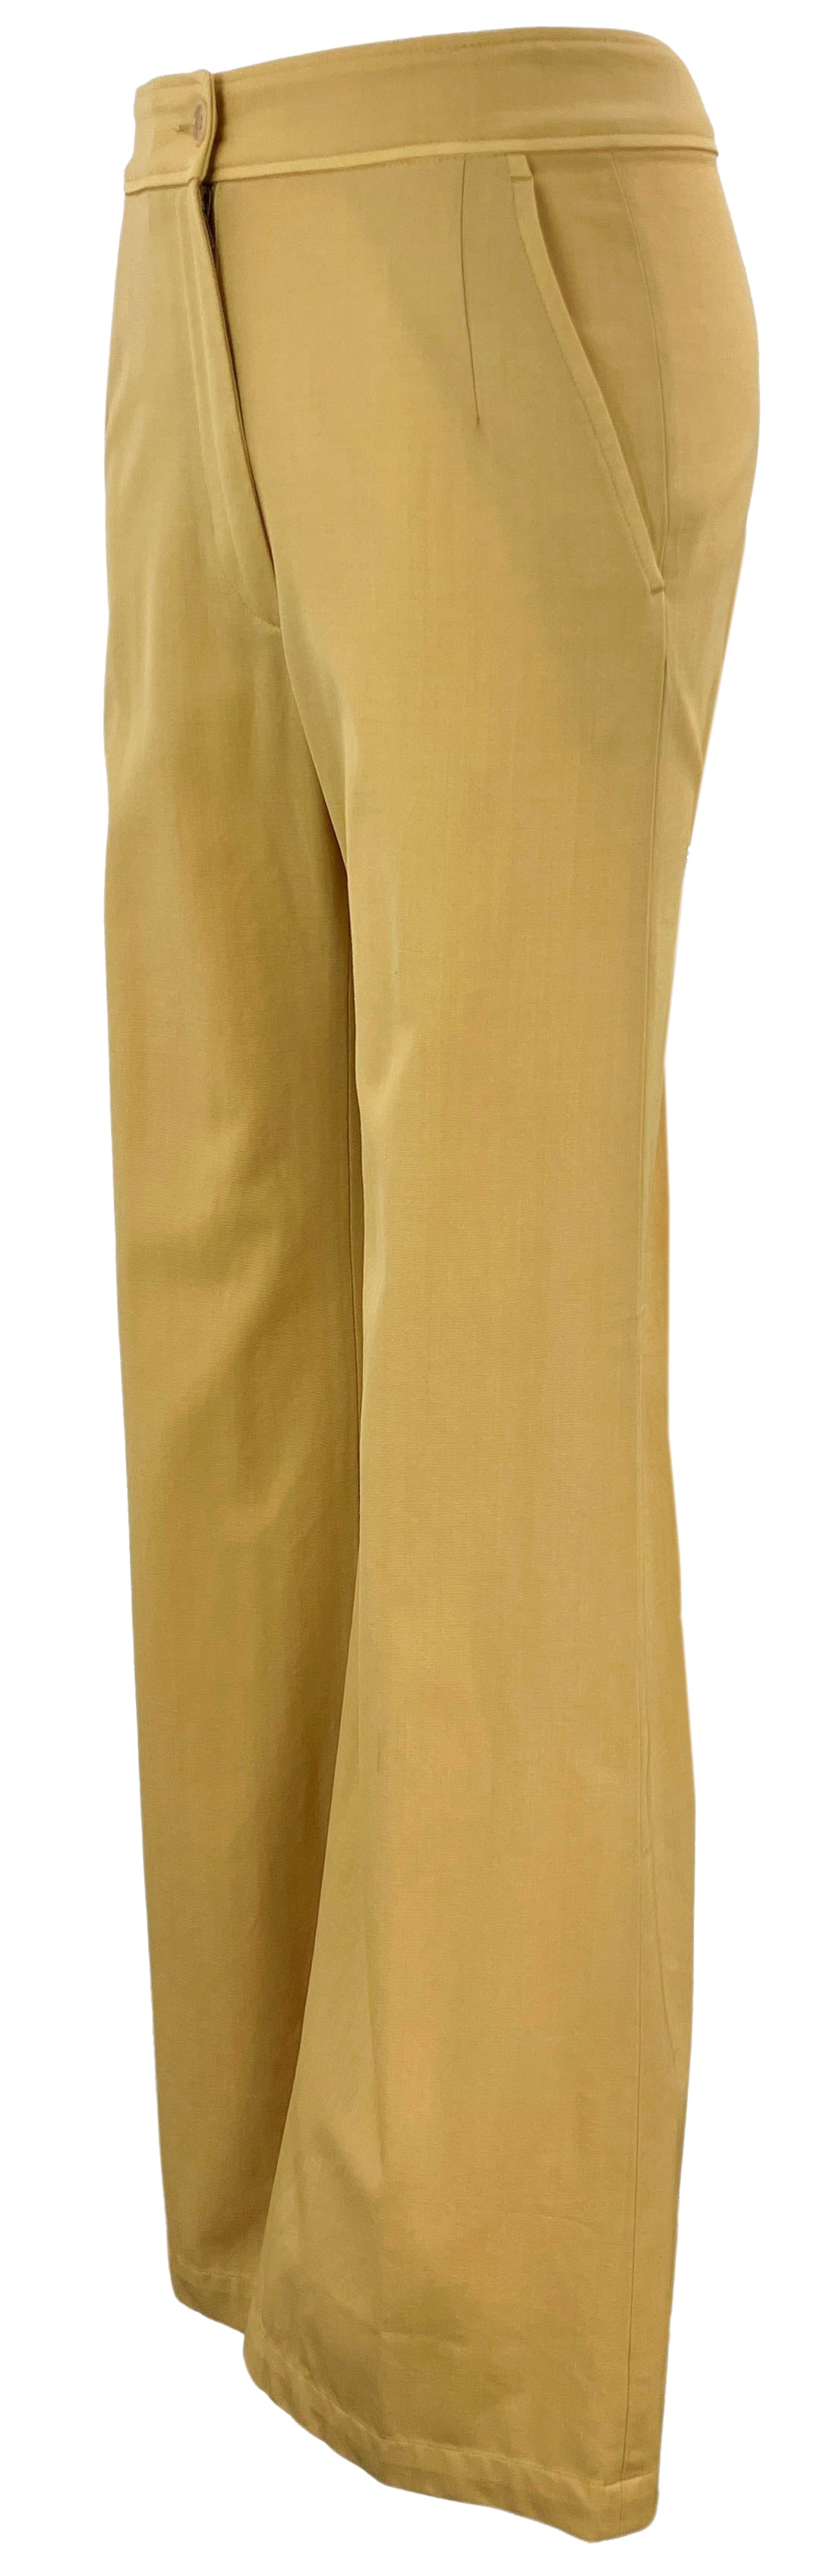 Dries Van Noten High Rise Trousers in Dark Yellow - Discounts on Dries Van Noten at UAL